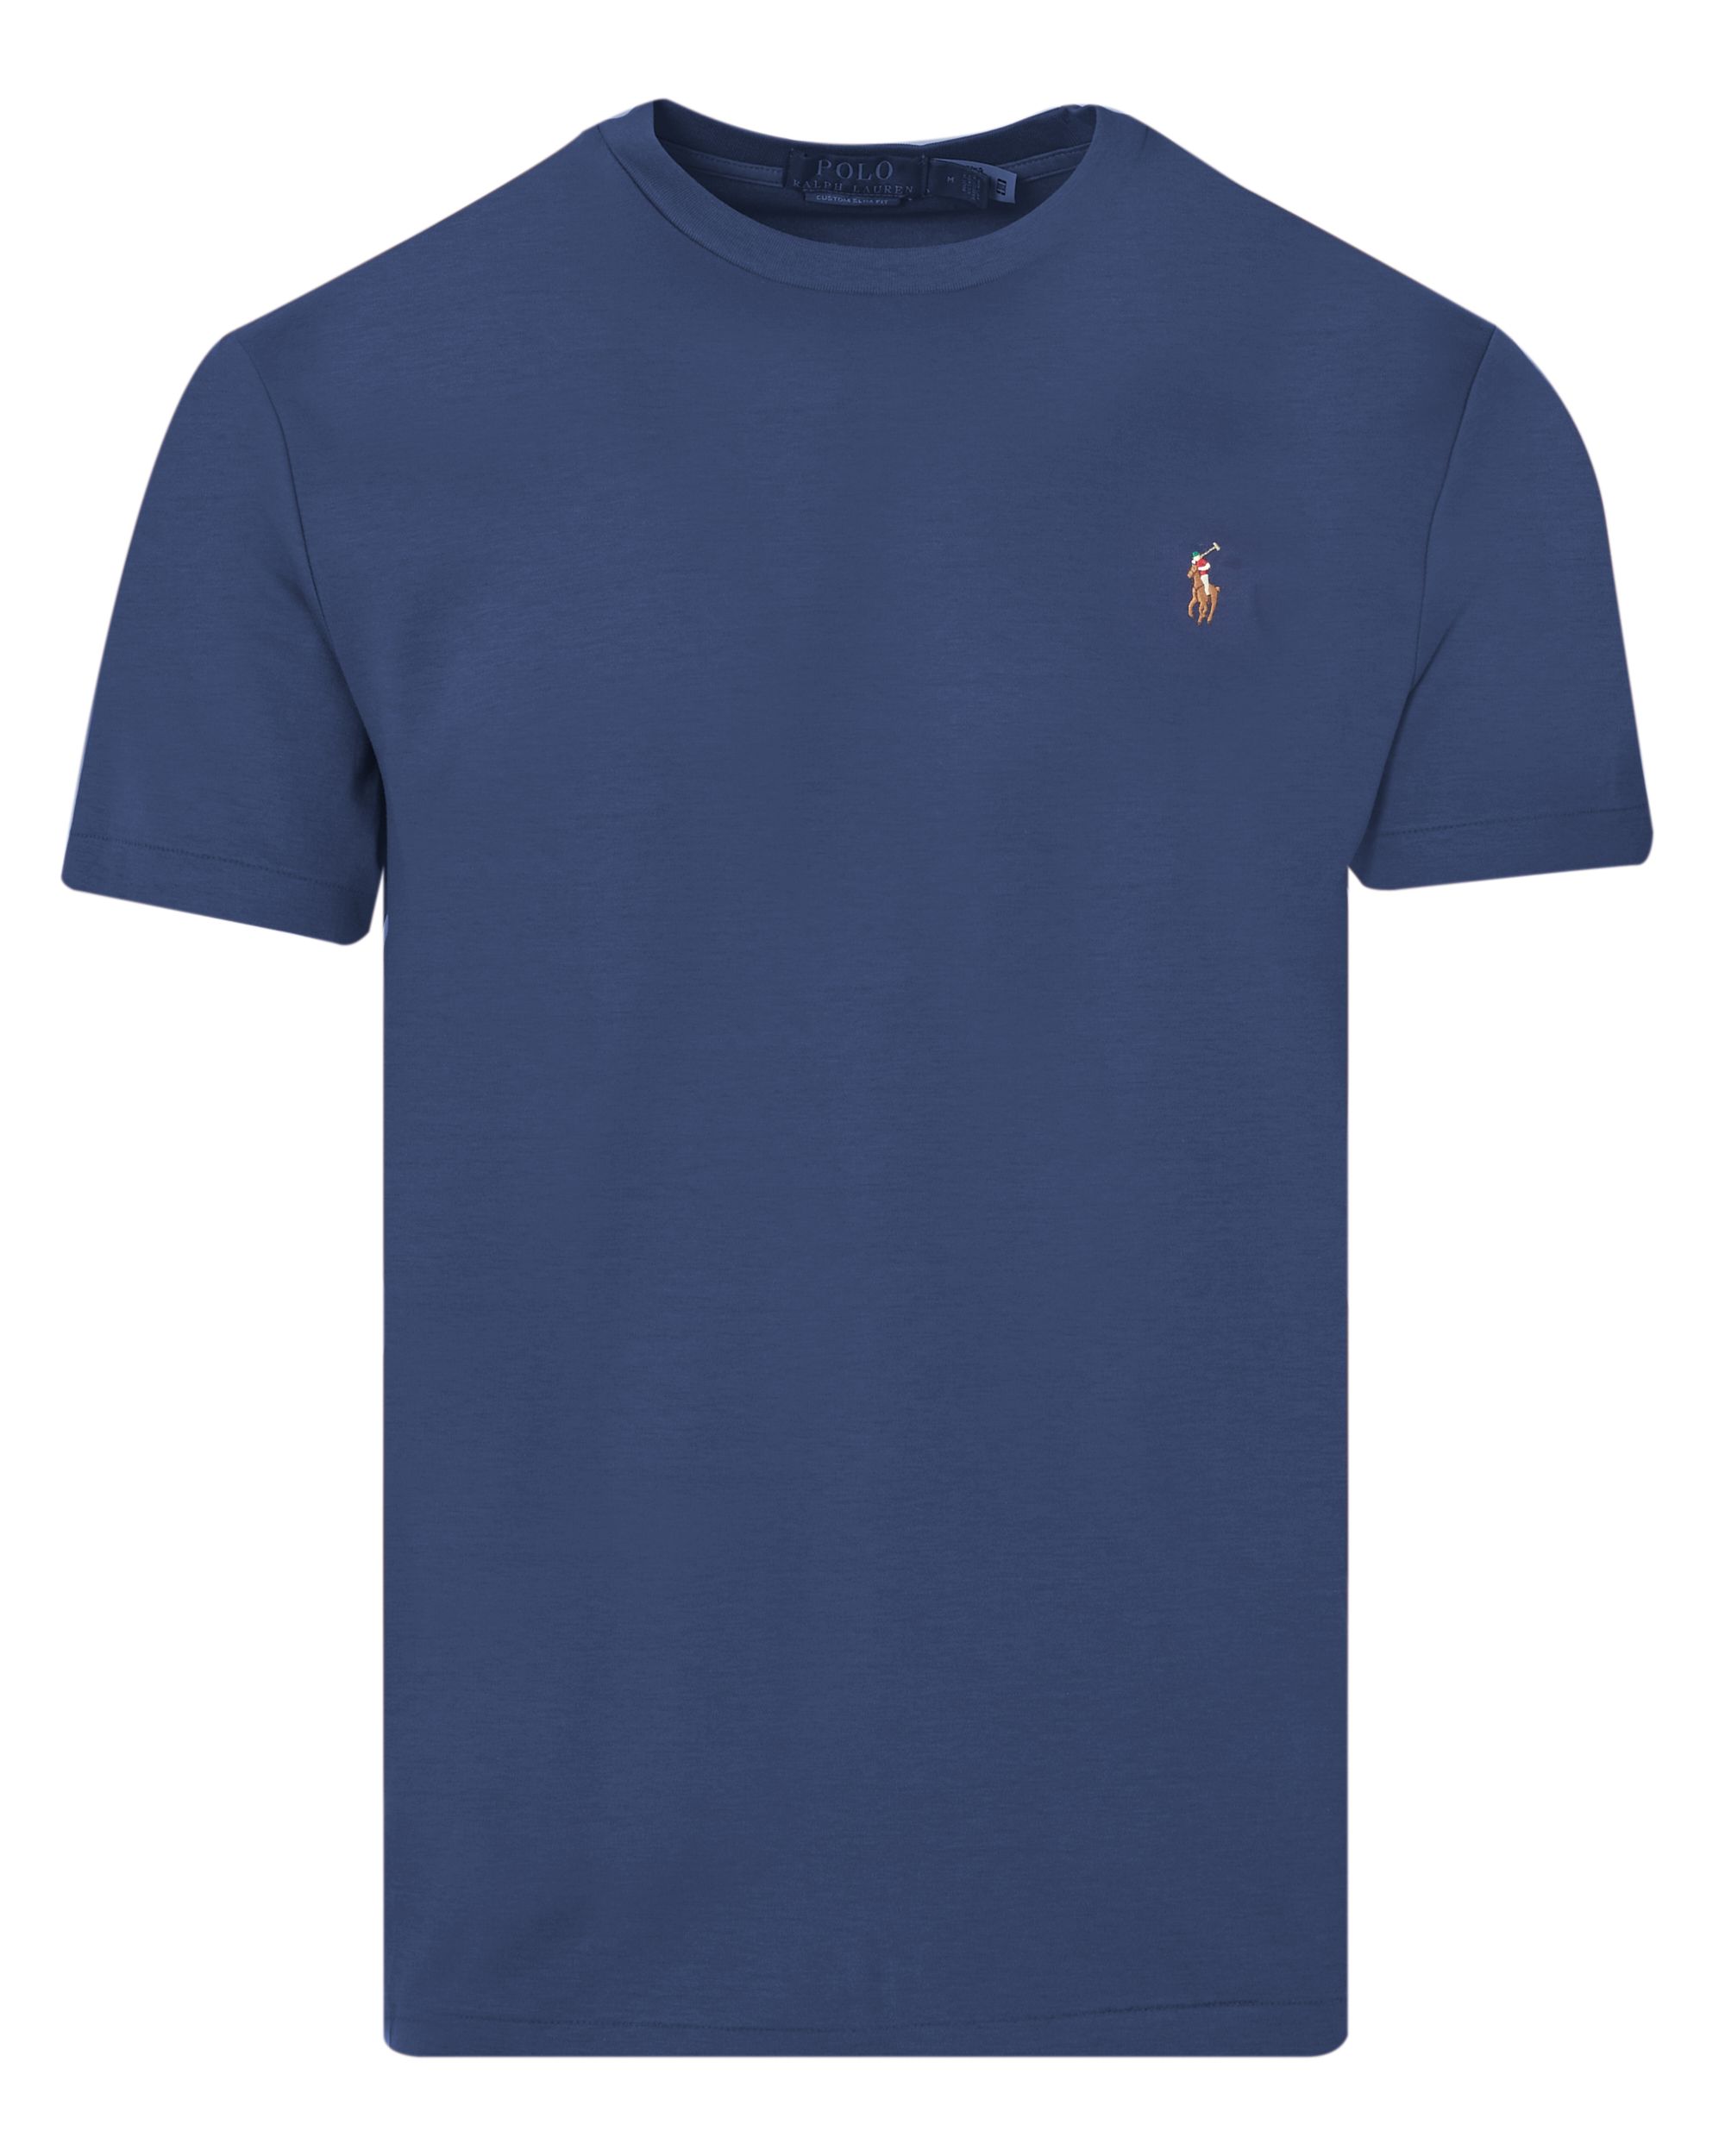 Polo Ralph Lauren T-shirt KM Donker blauw 083454-001-L